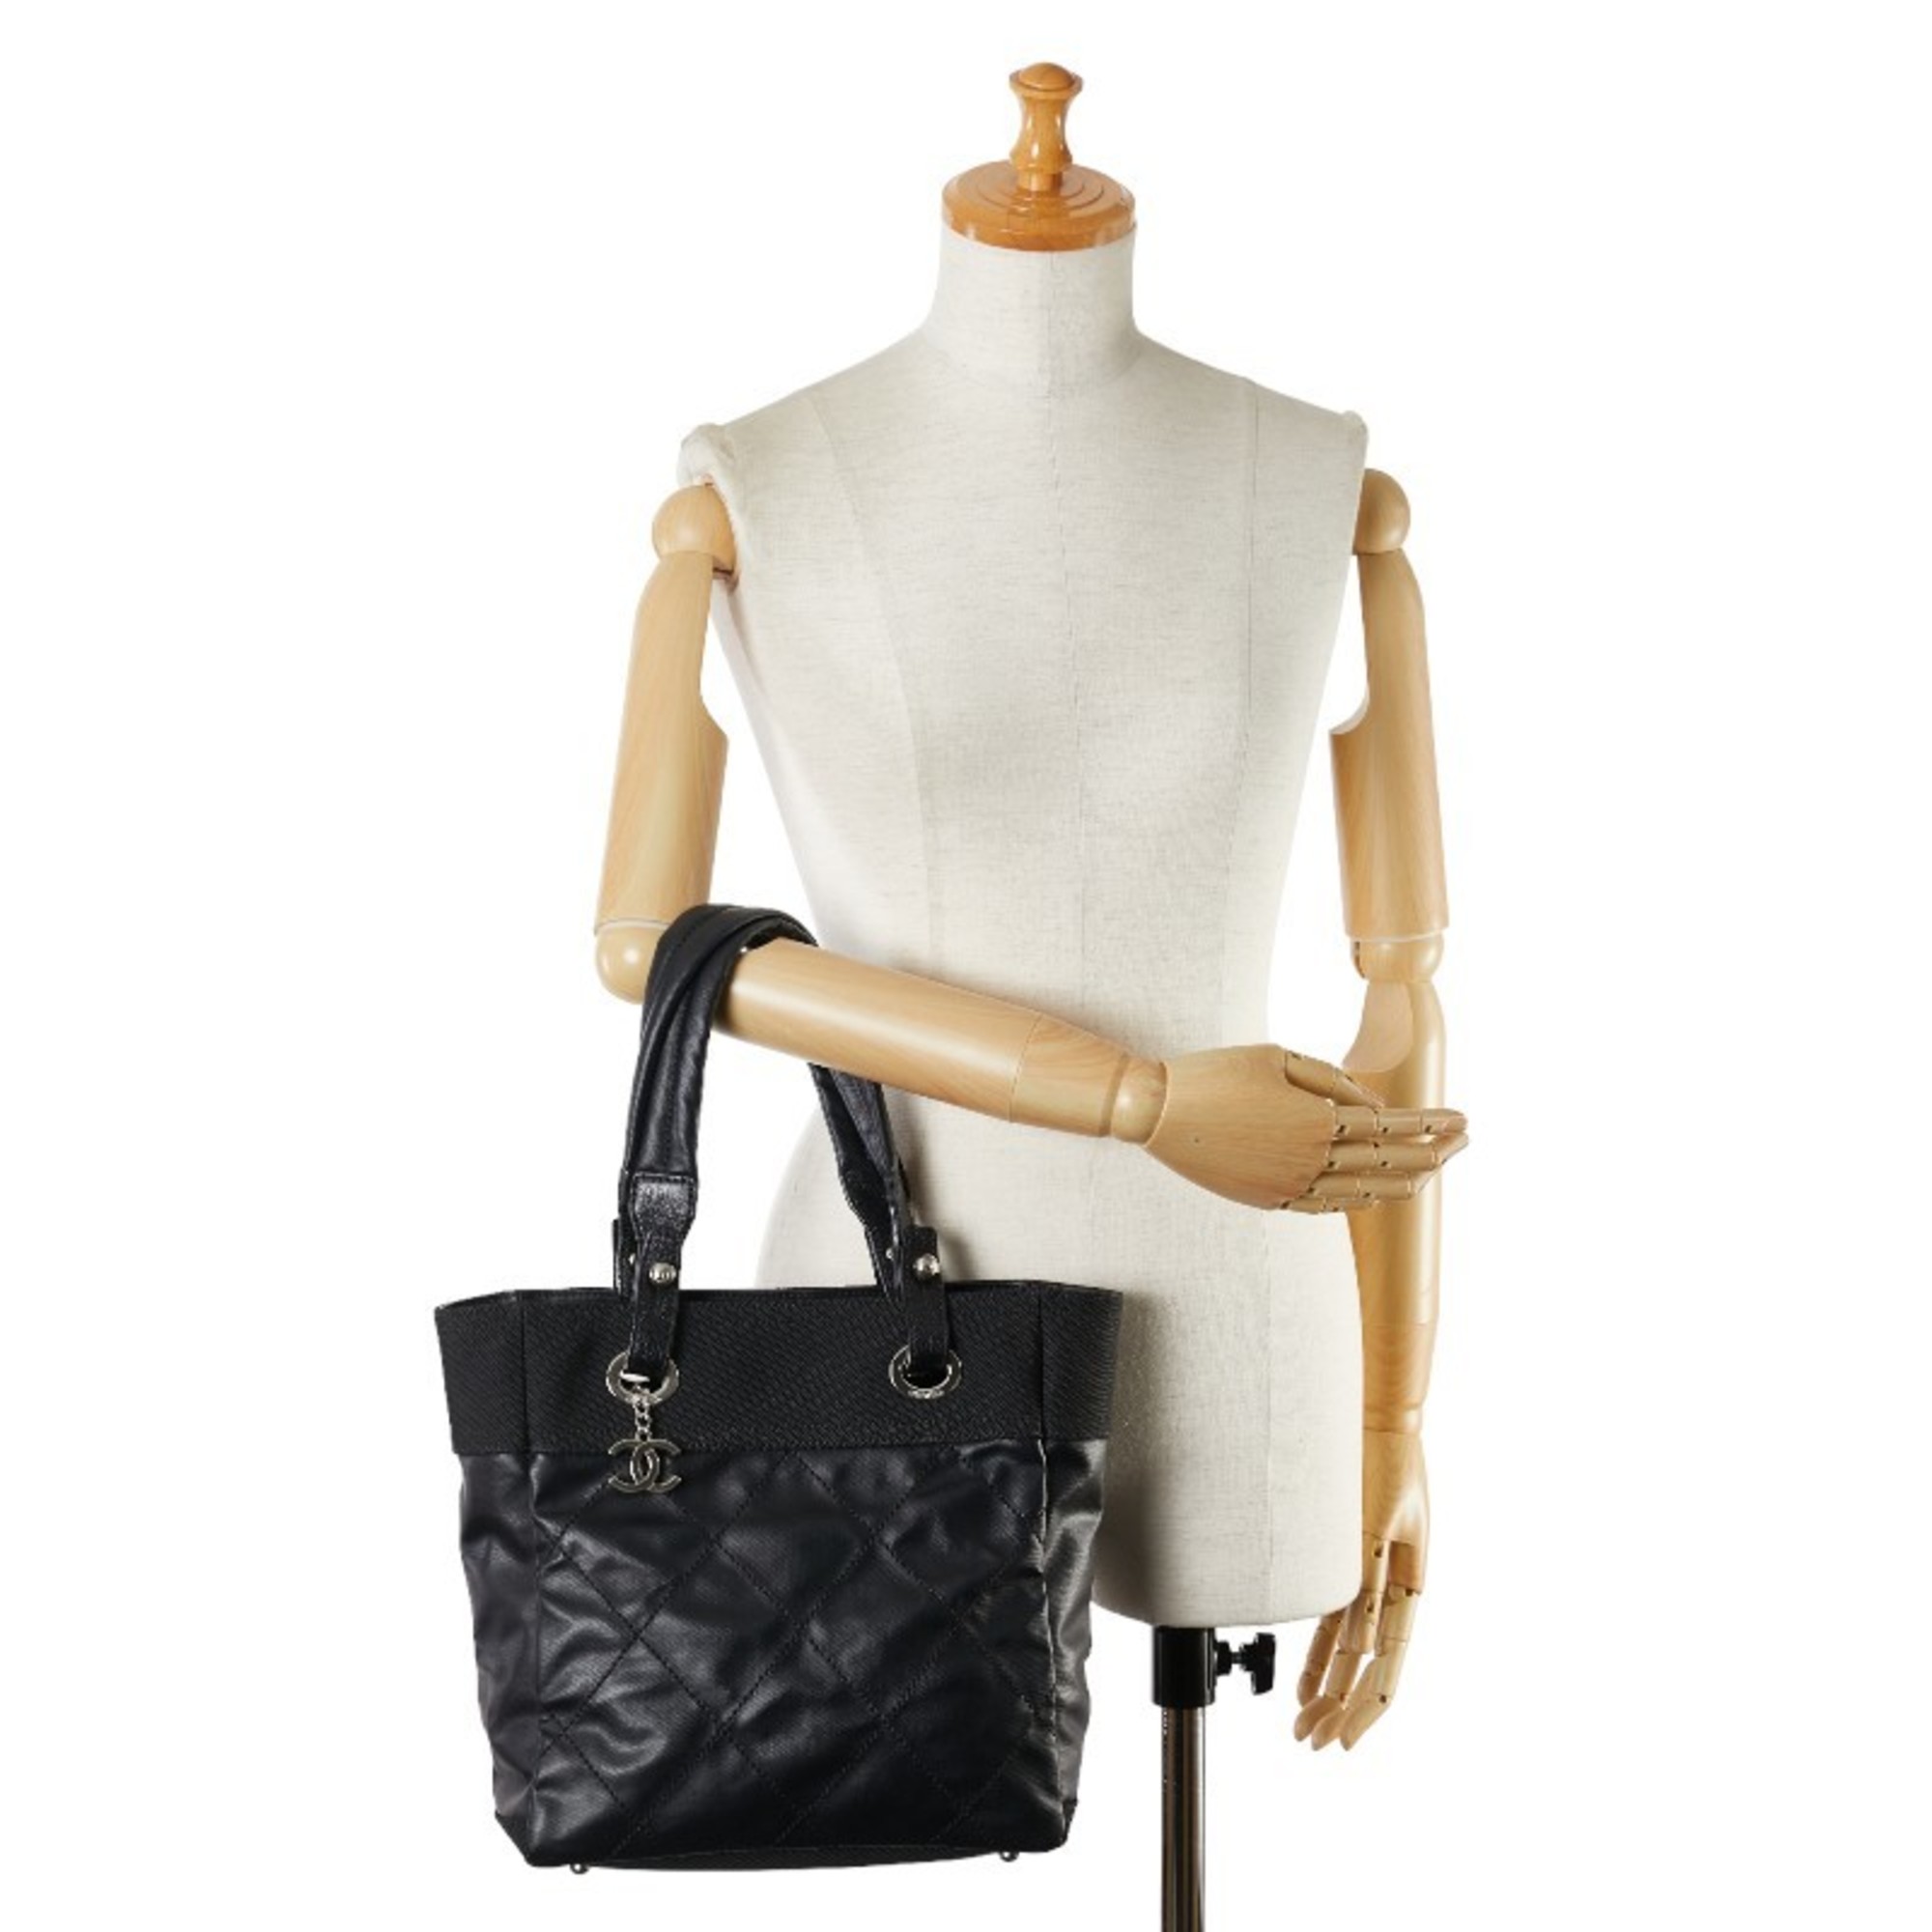 Chanel Coco Mark Paris Biarritz Tote PM Bag Shoulder A34208 Black PVC Canvas Women's CHANEL